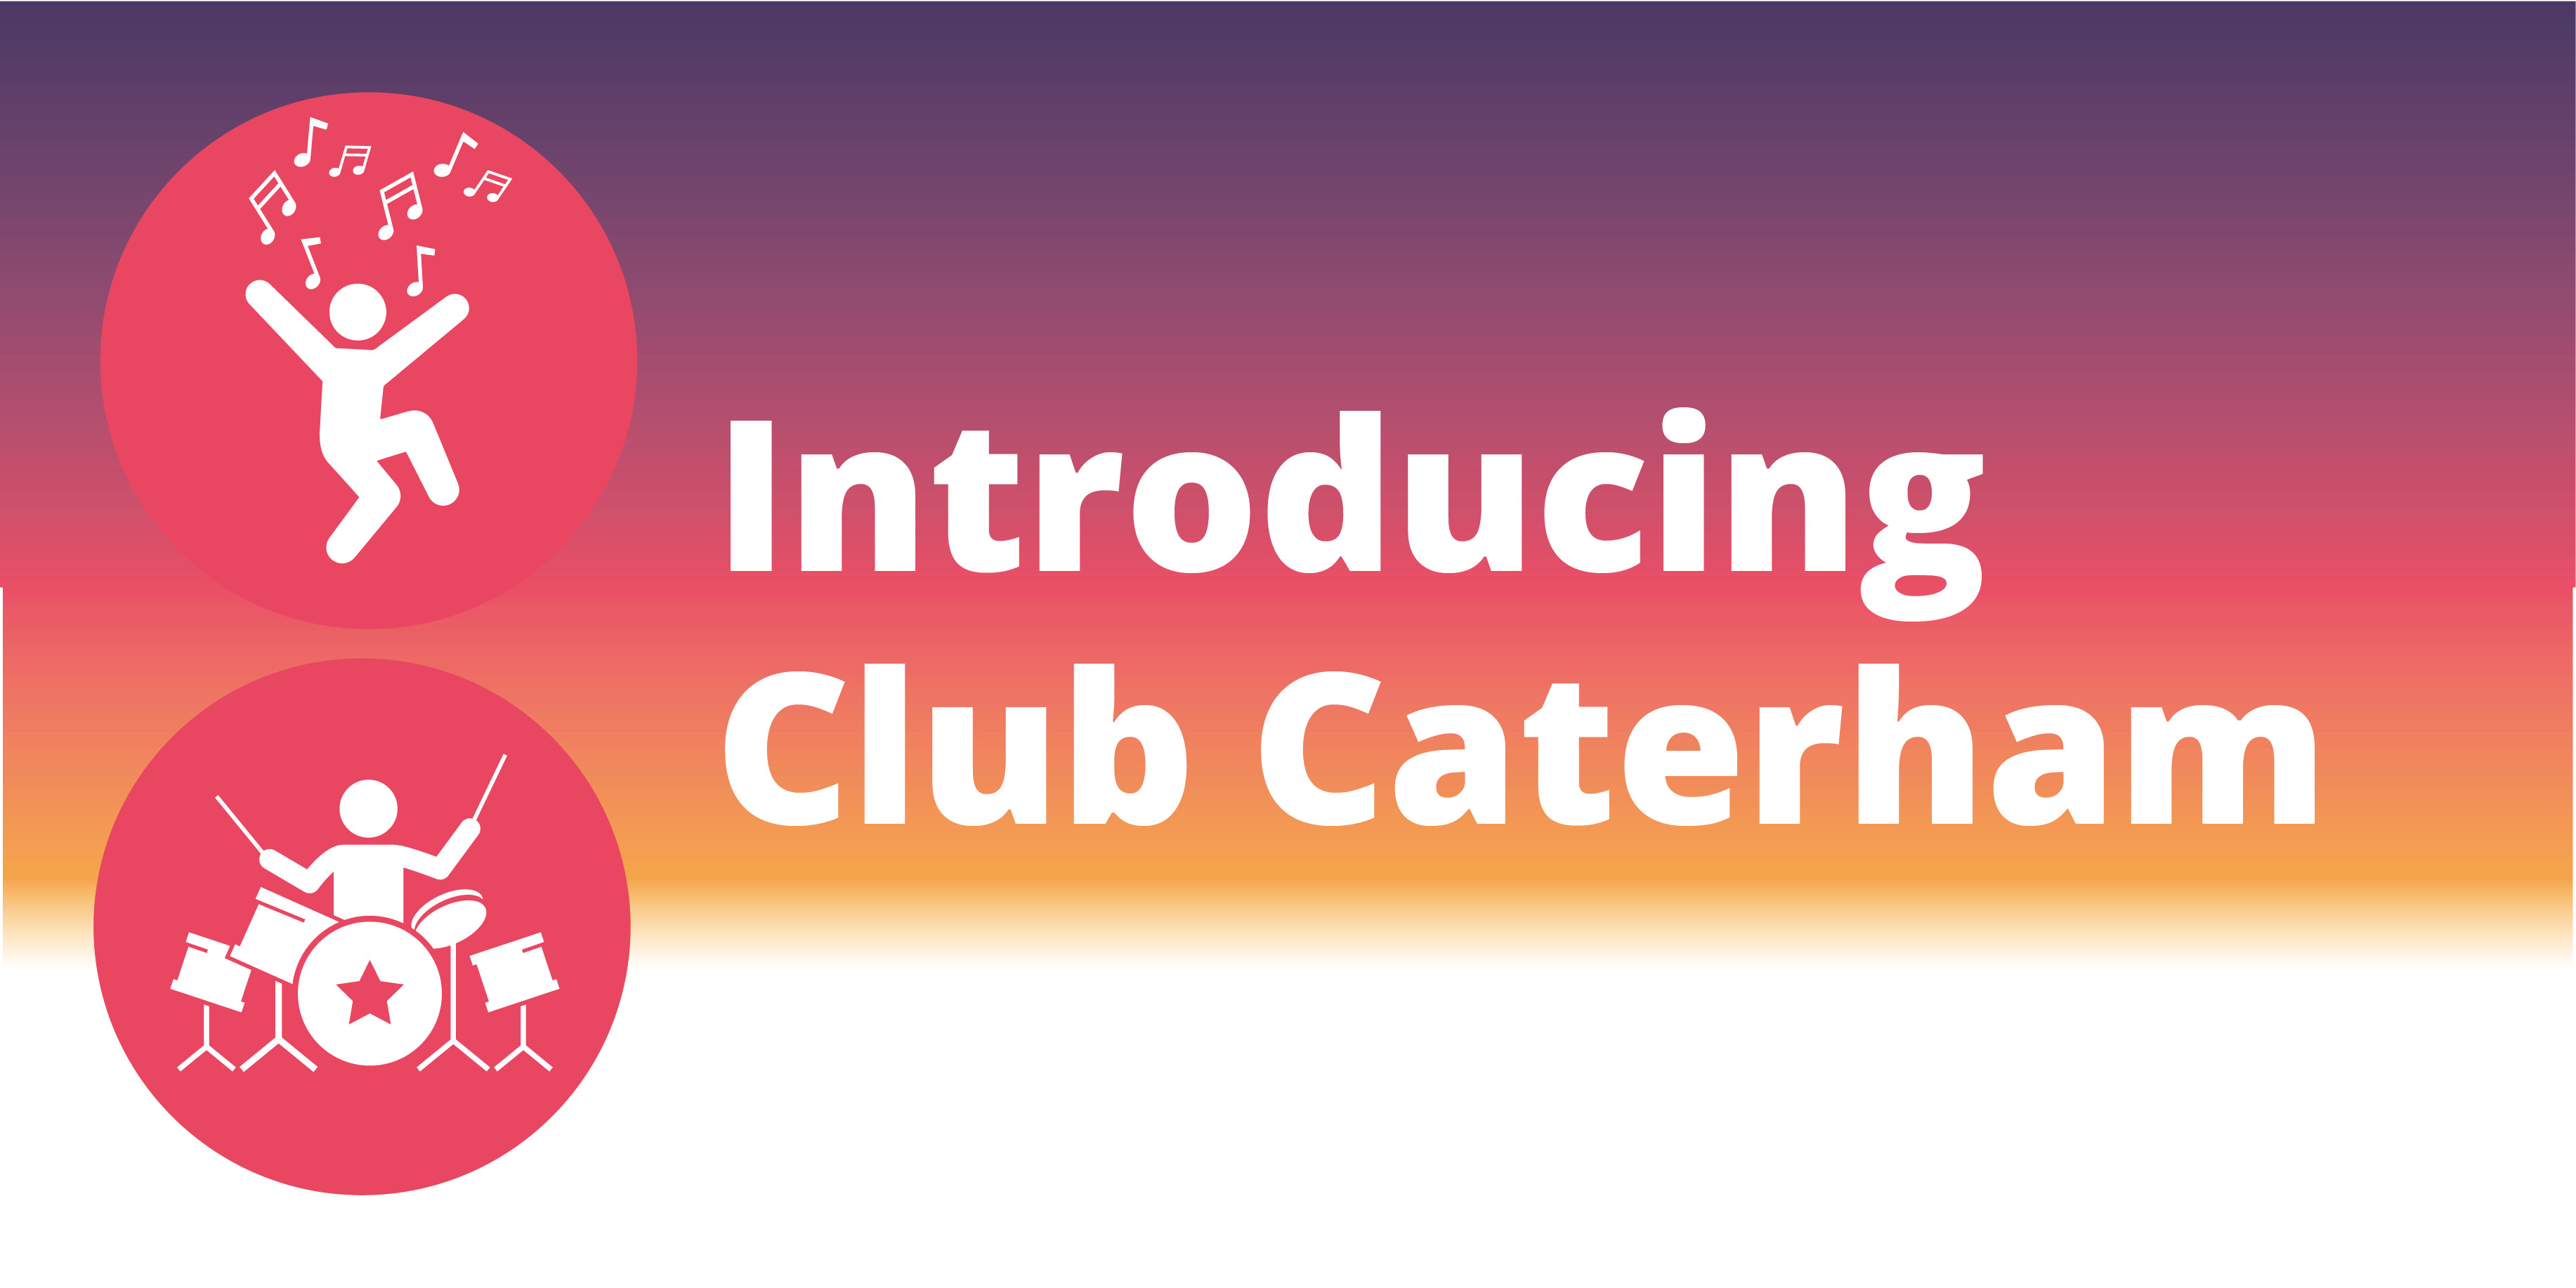 Club Caterham